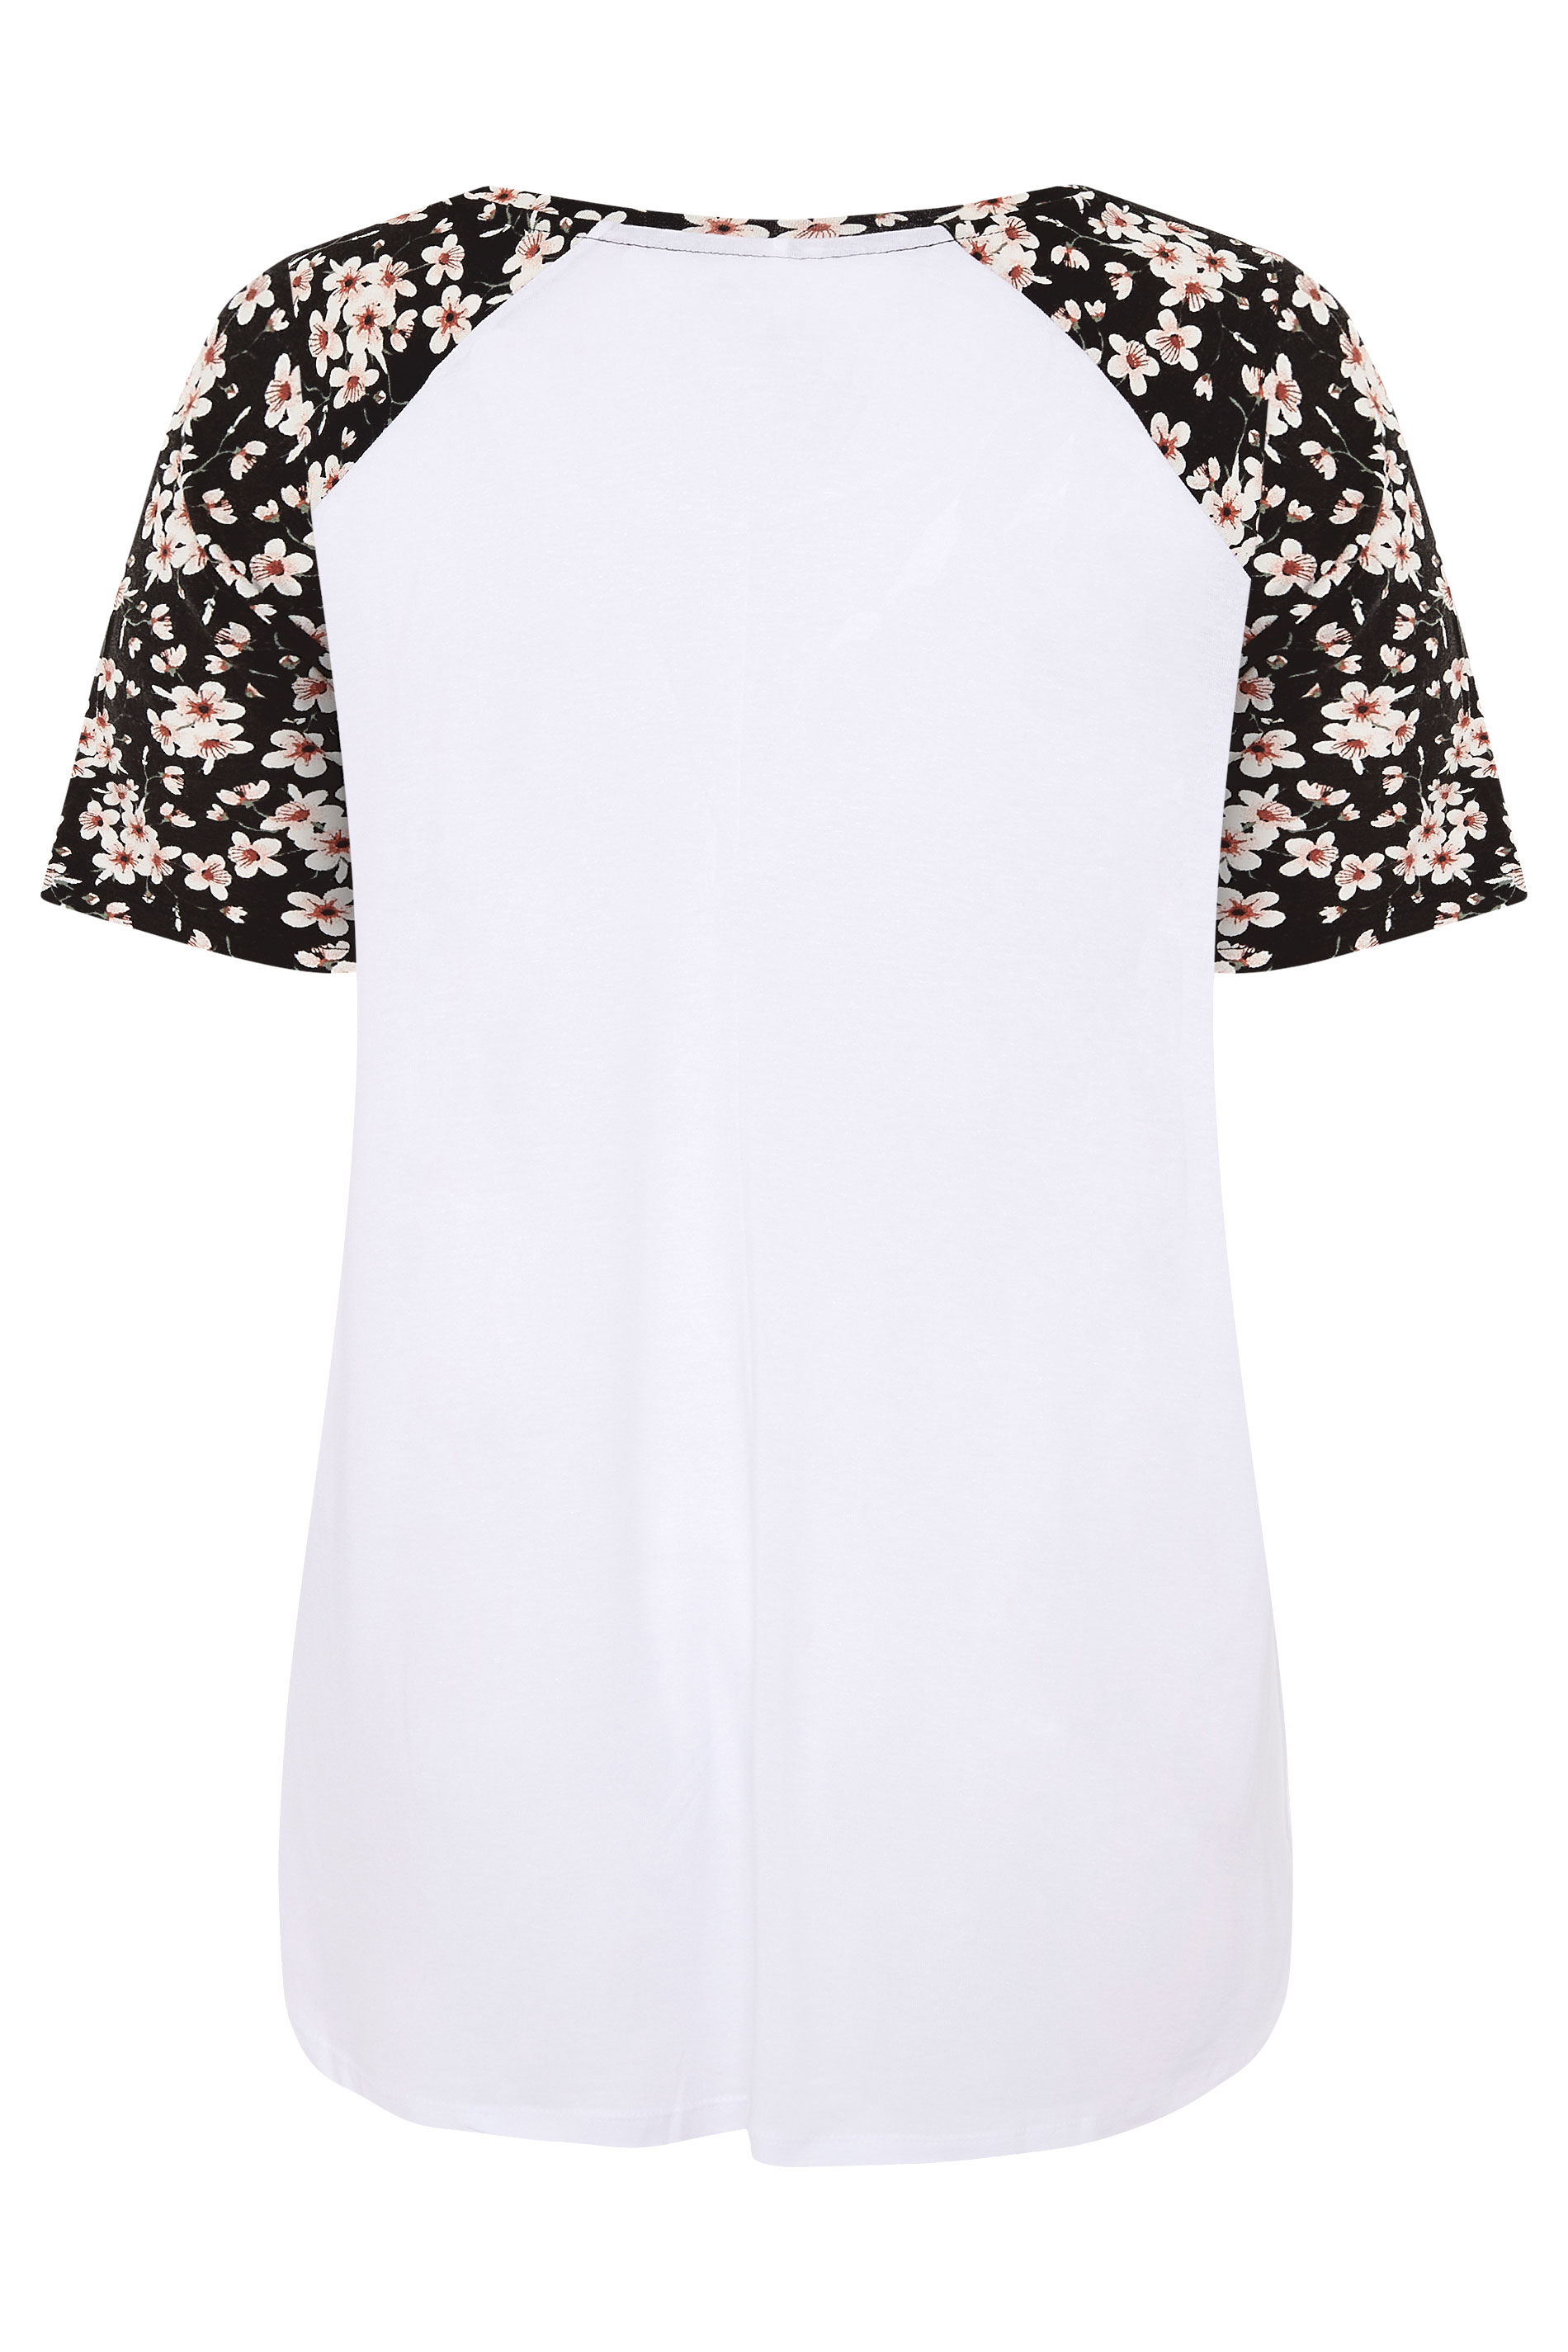 Grande taille  Tops Grande taille  Top à fleurs | T-Shirt Blanc Manches Contrastées Floral - ZS27857